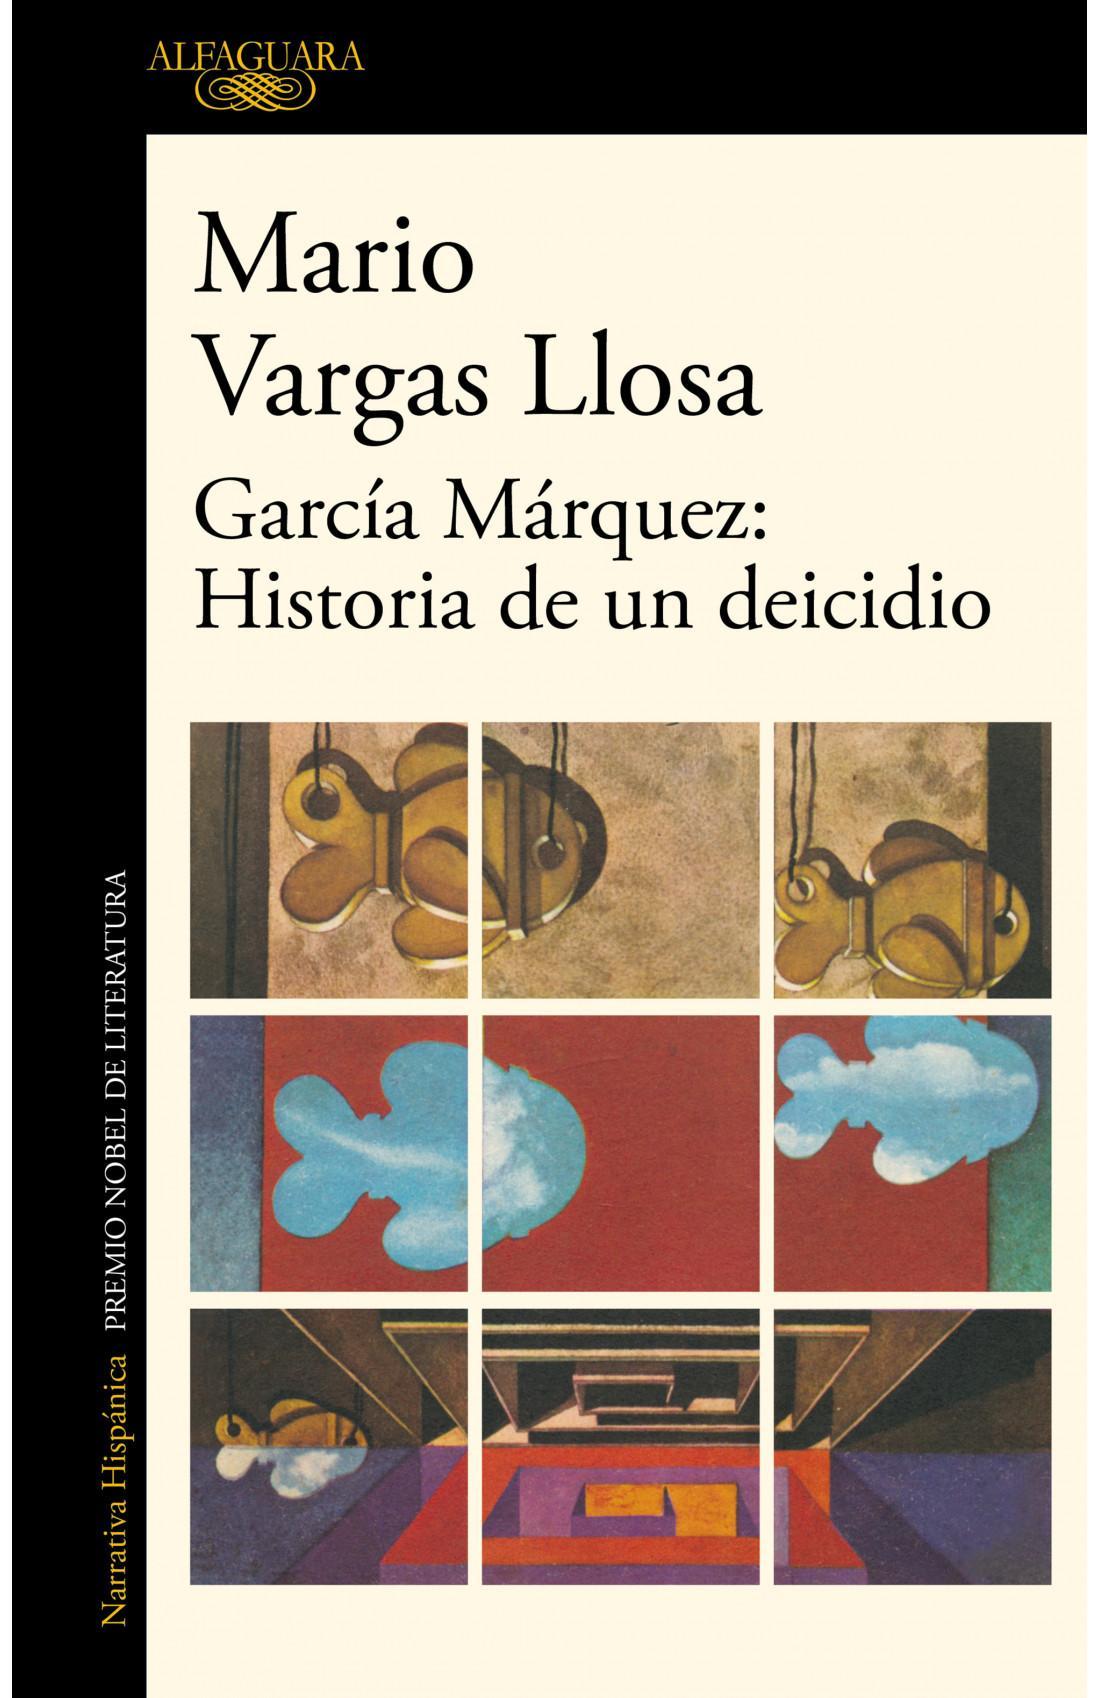 Garcia Marquez: Historia de un Deicidio - Mario Vargas Llosa